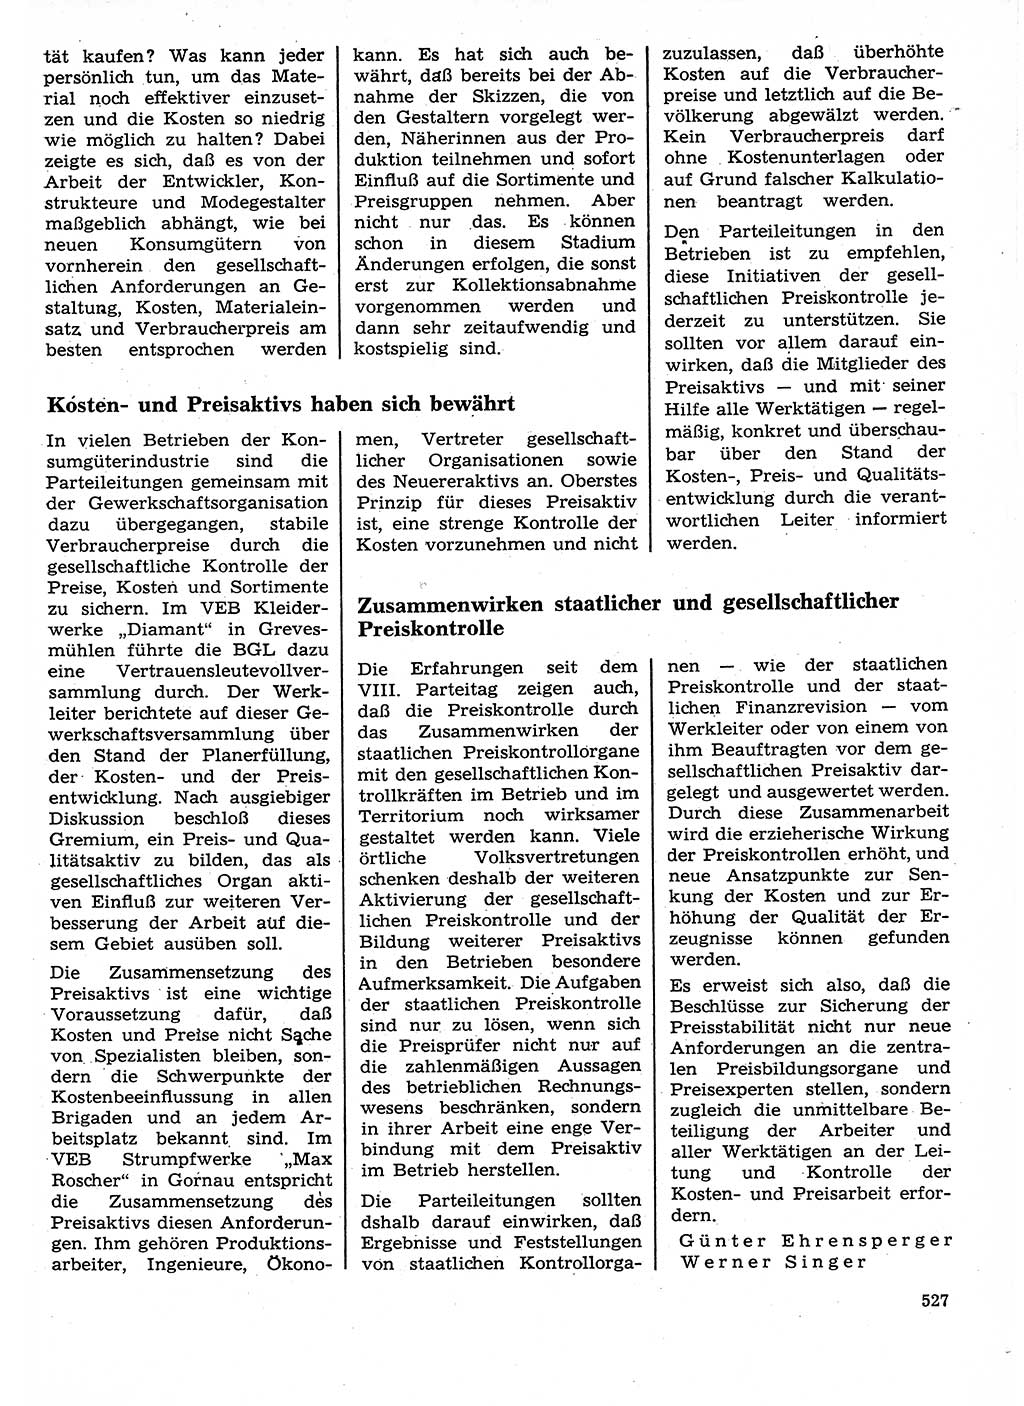 Neuer Weg (NW), Organ des Zentralkomitees (ZK) der SED (Sozialistische Einheitspartei Deutschlands) für Fragen des Parteilebens, 27. Jahrgang [Deutsche Demokratische Republik (DDR)] 1972, Seite 527 (NW ZK SED DDR 1972, S. 527)